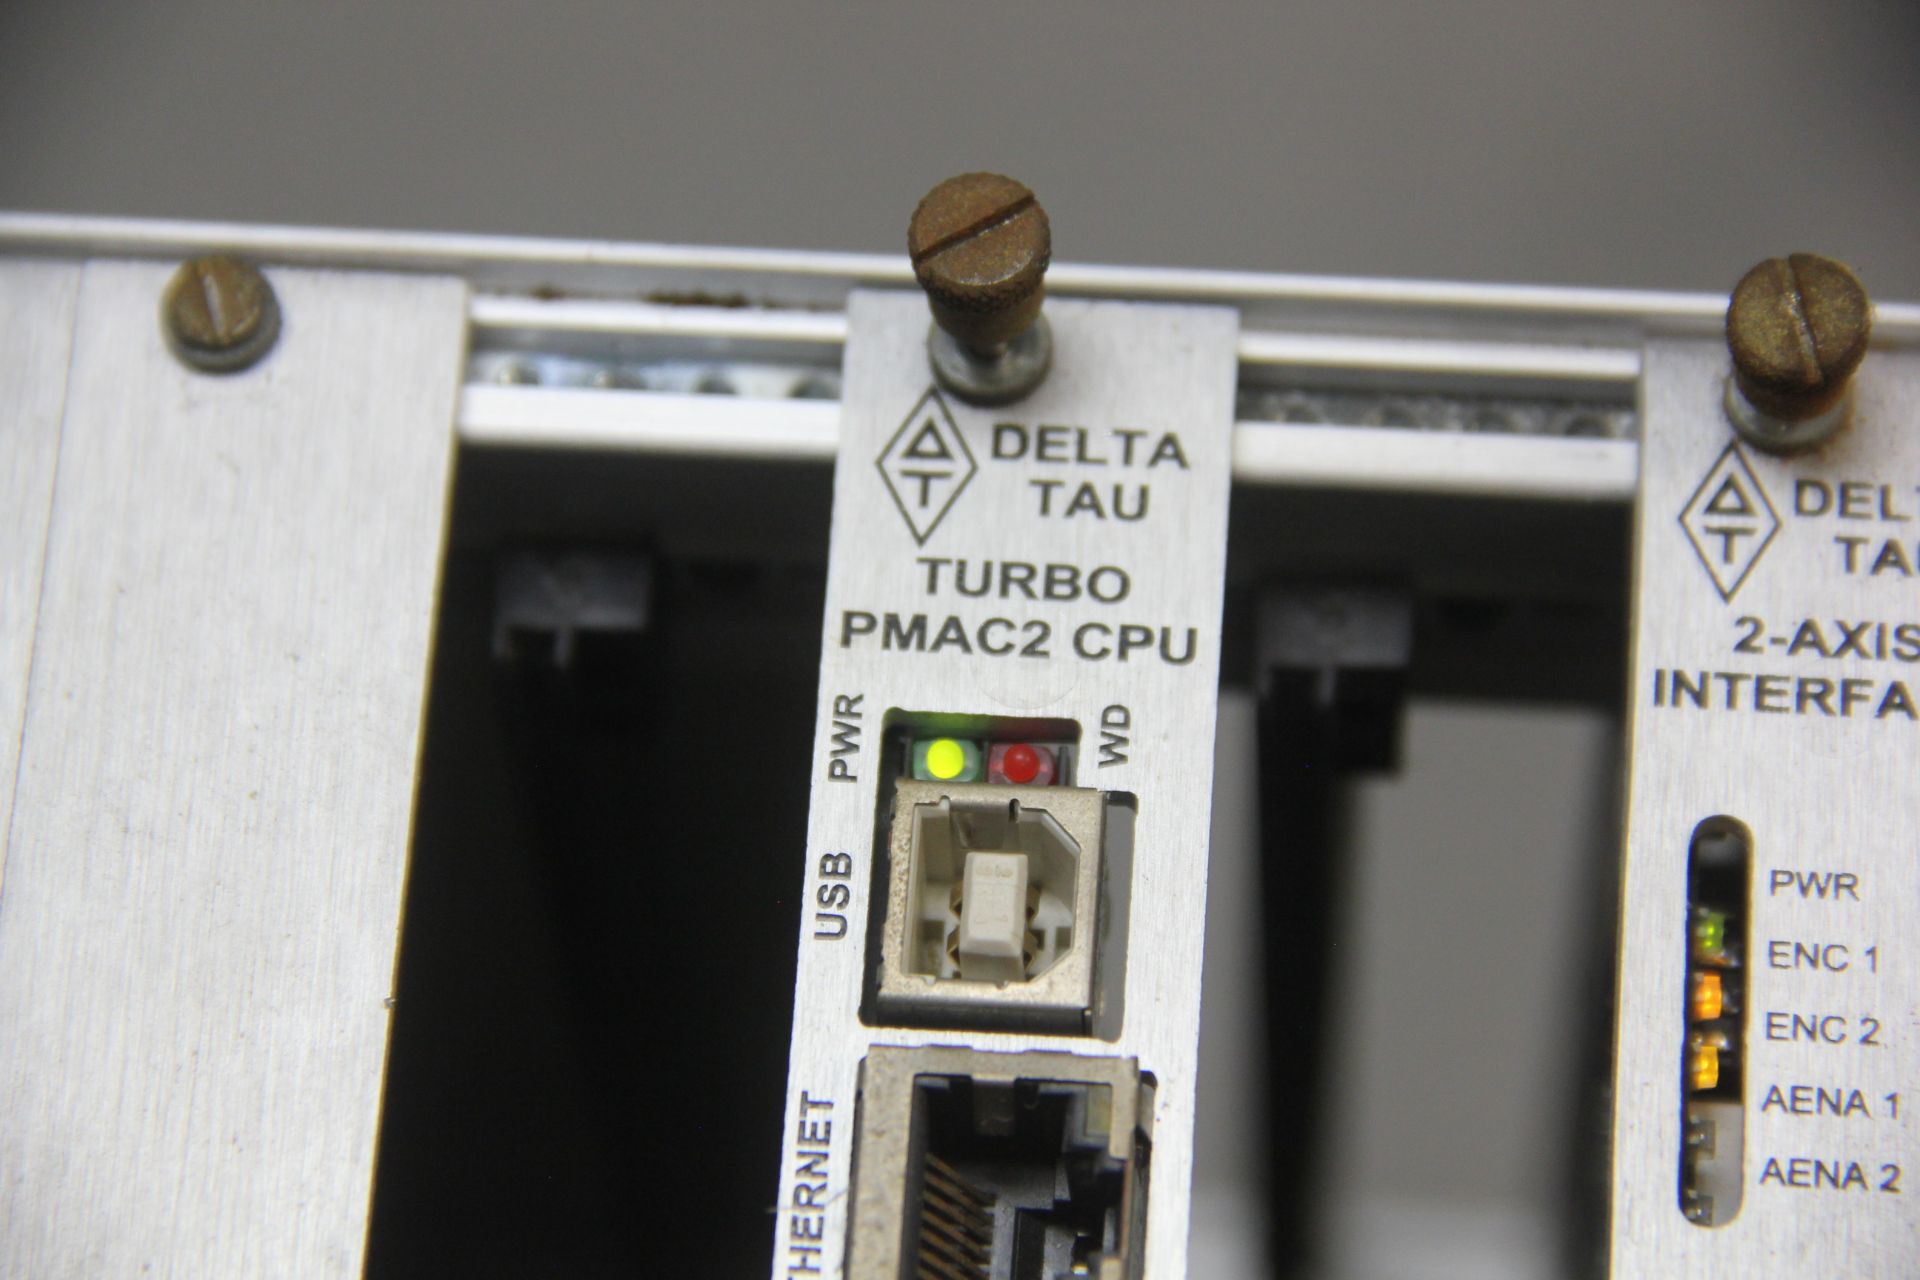 DELTA TAU TURBO PMAC2 CPU - Image 5 of 6